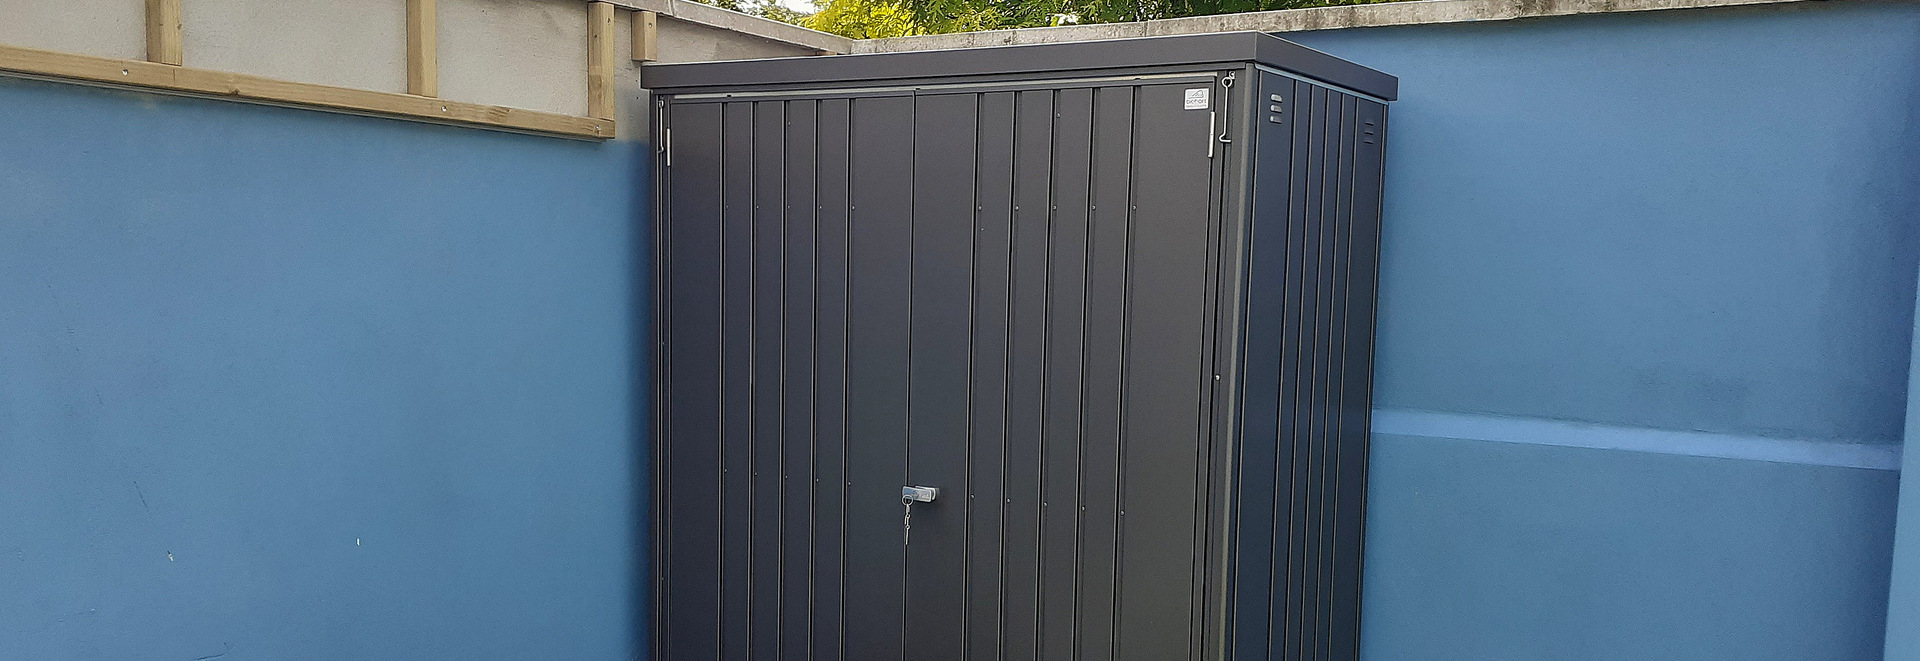 Biohort Equipment Locker 150 in metallic dark grey | Supplied & Fitted by Owen Chubb in Glasnevin, Dublin 11  | BEST PRICES in Dublin | Tel 087-2306 128